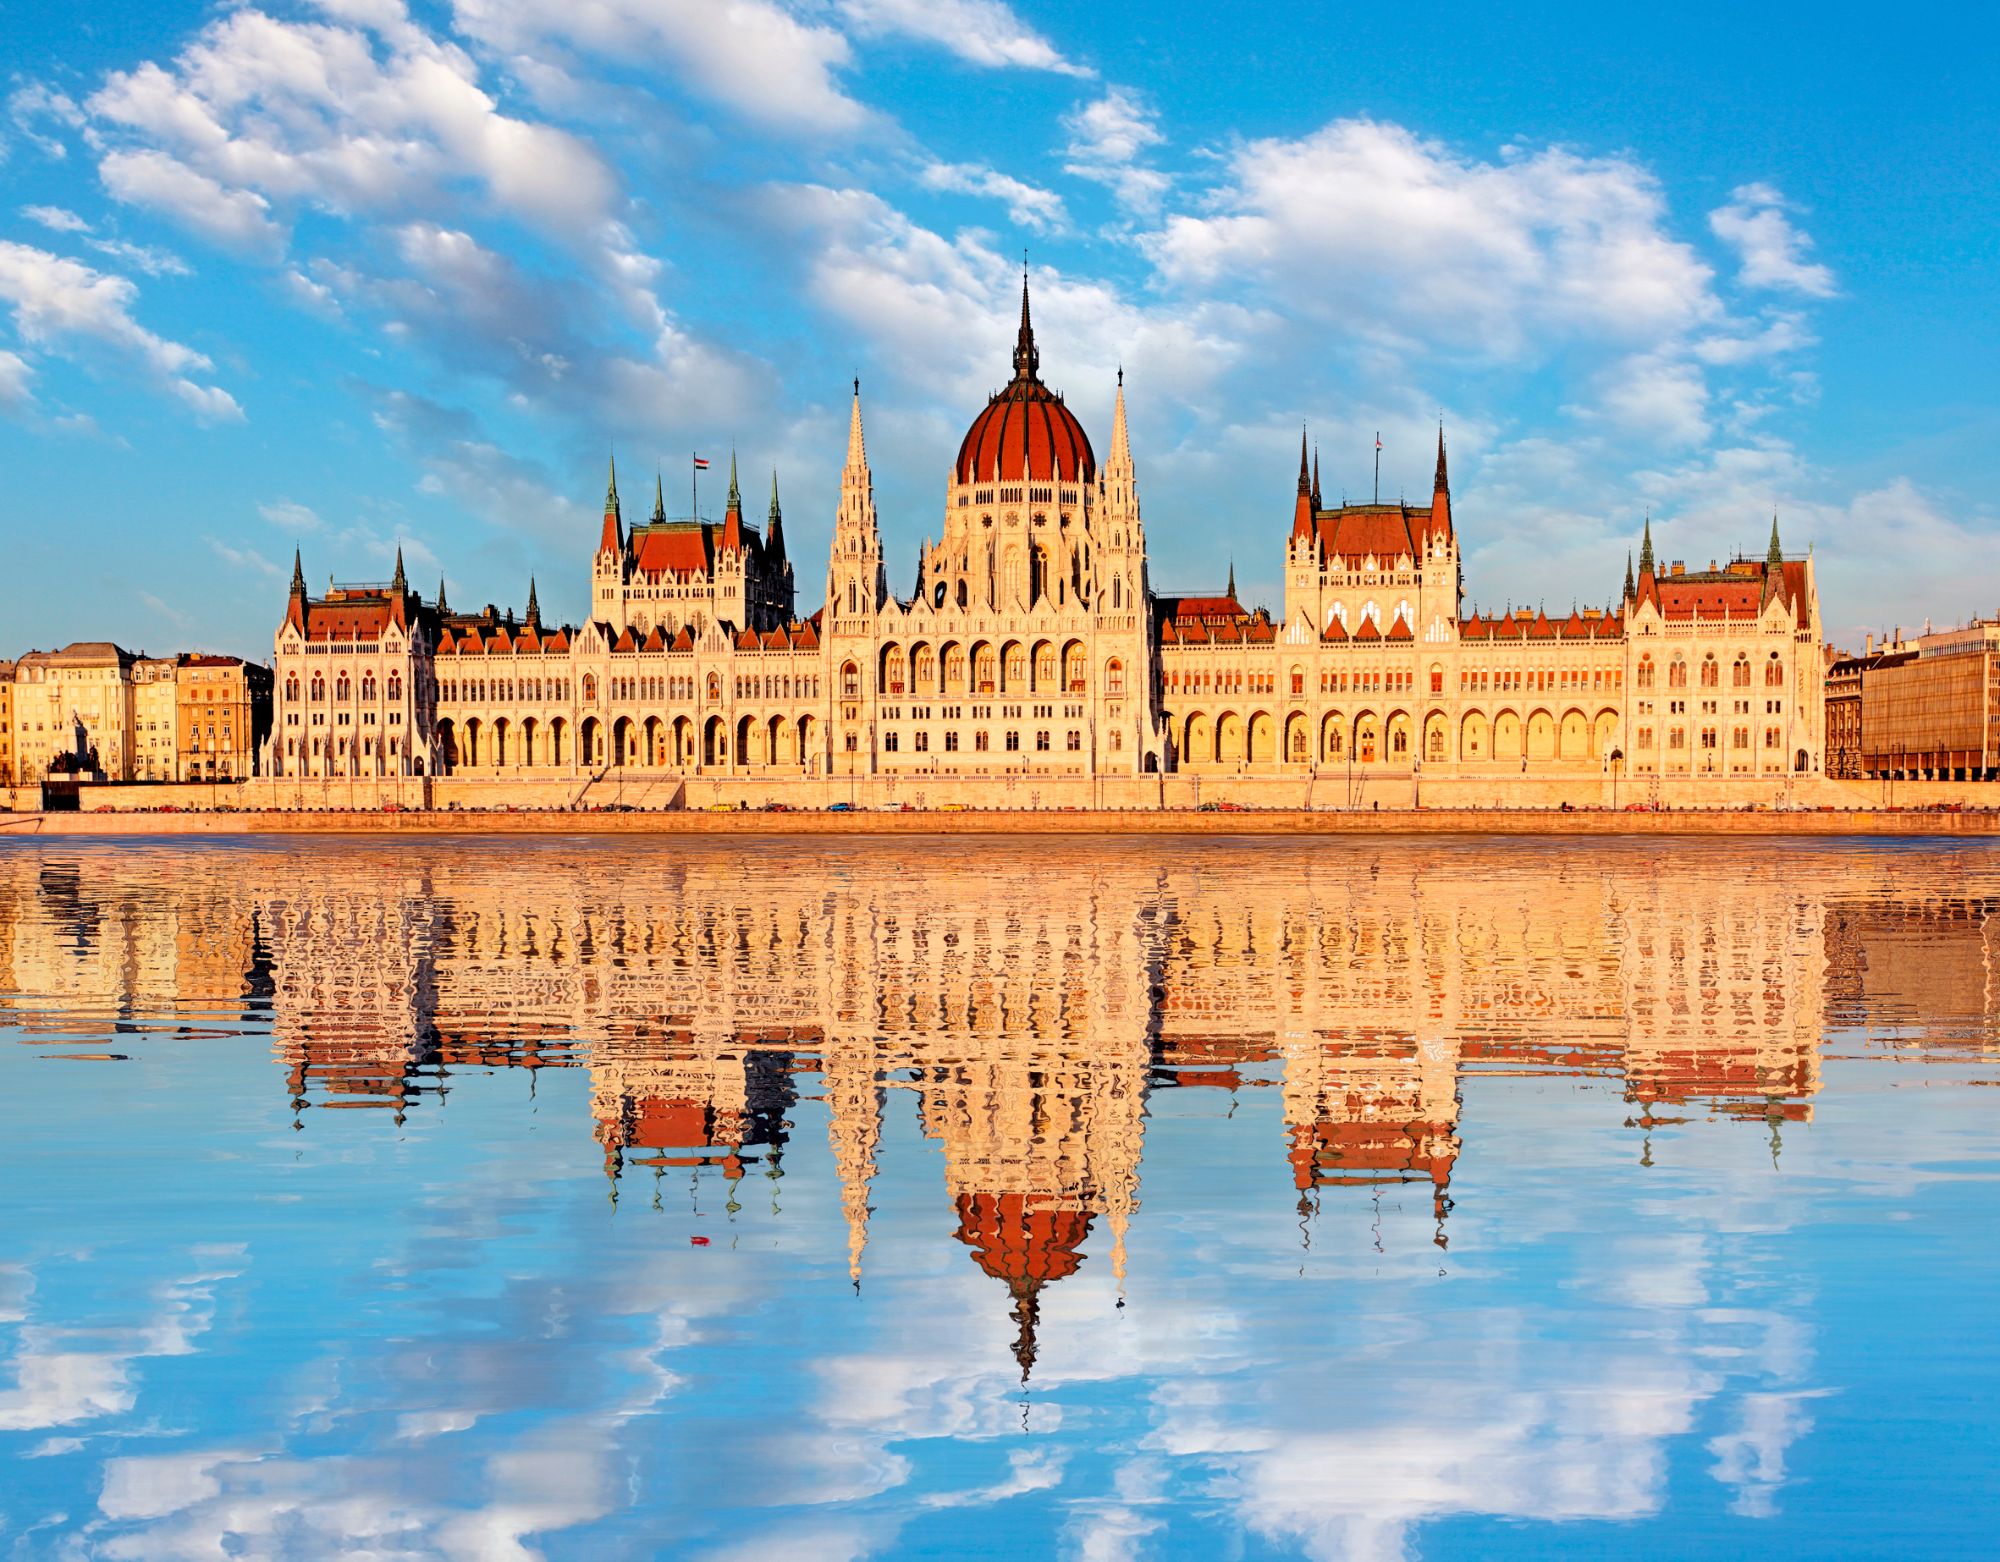 tour of budapest parliament